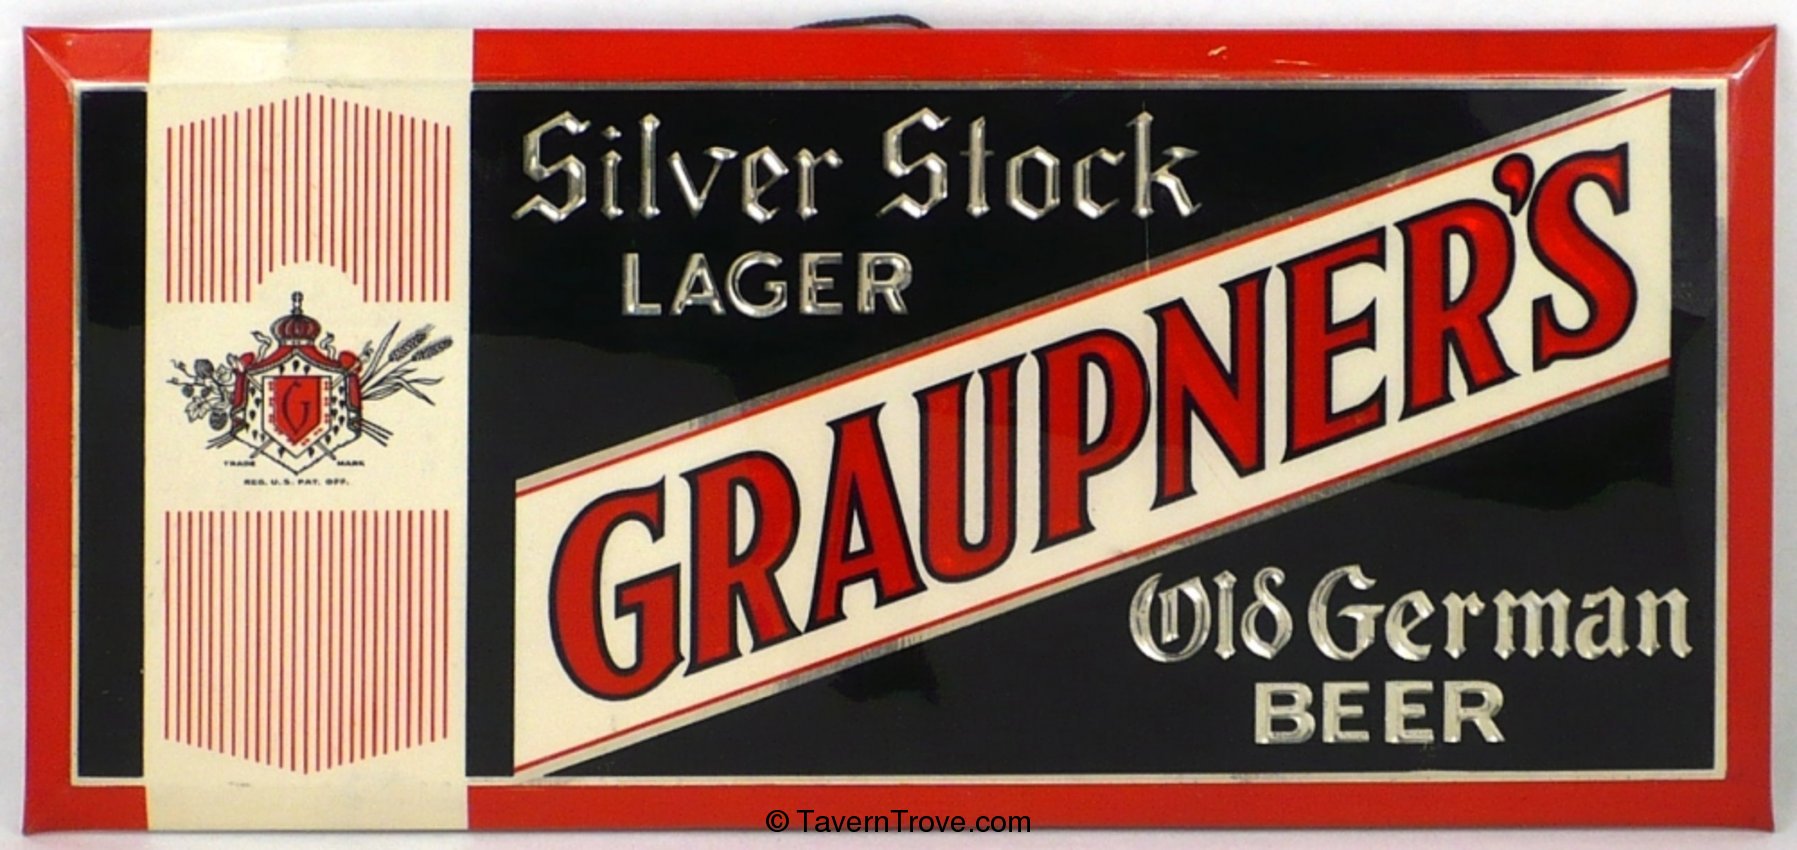 Graupner's Silver Stock Lager/Old German Beer